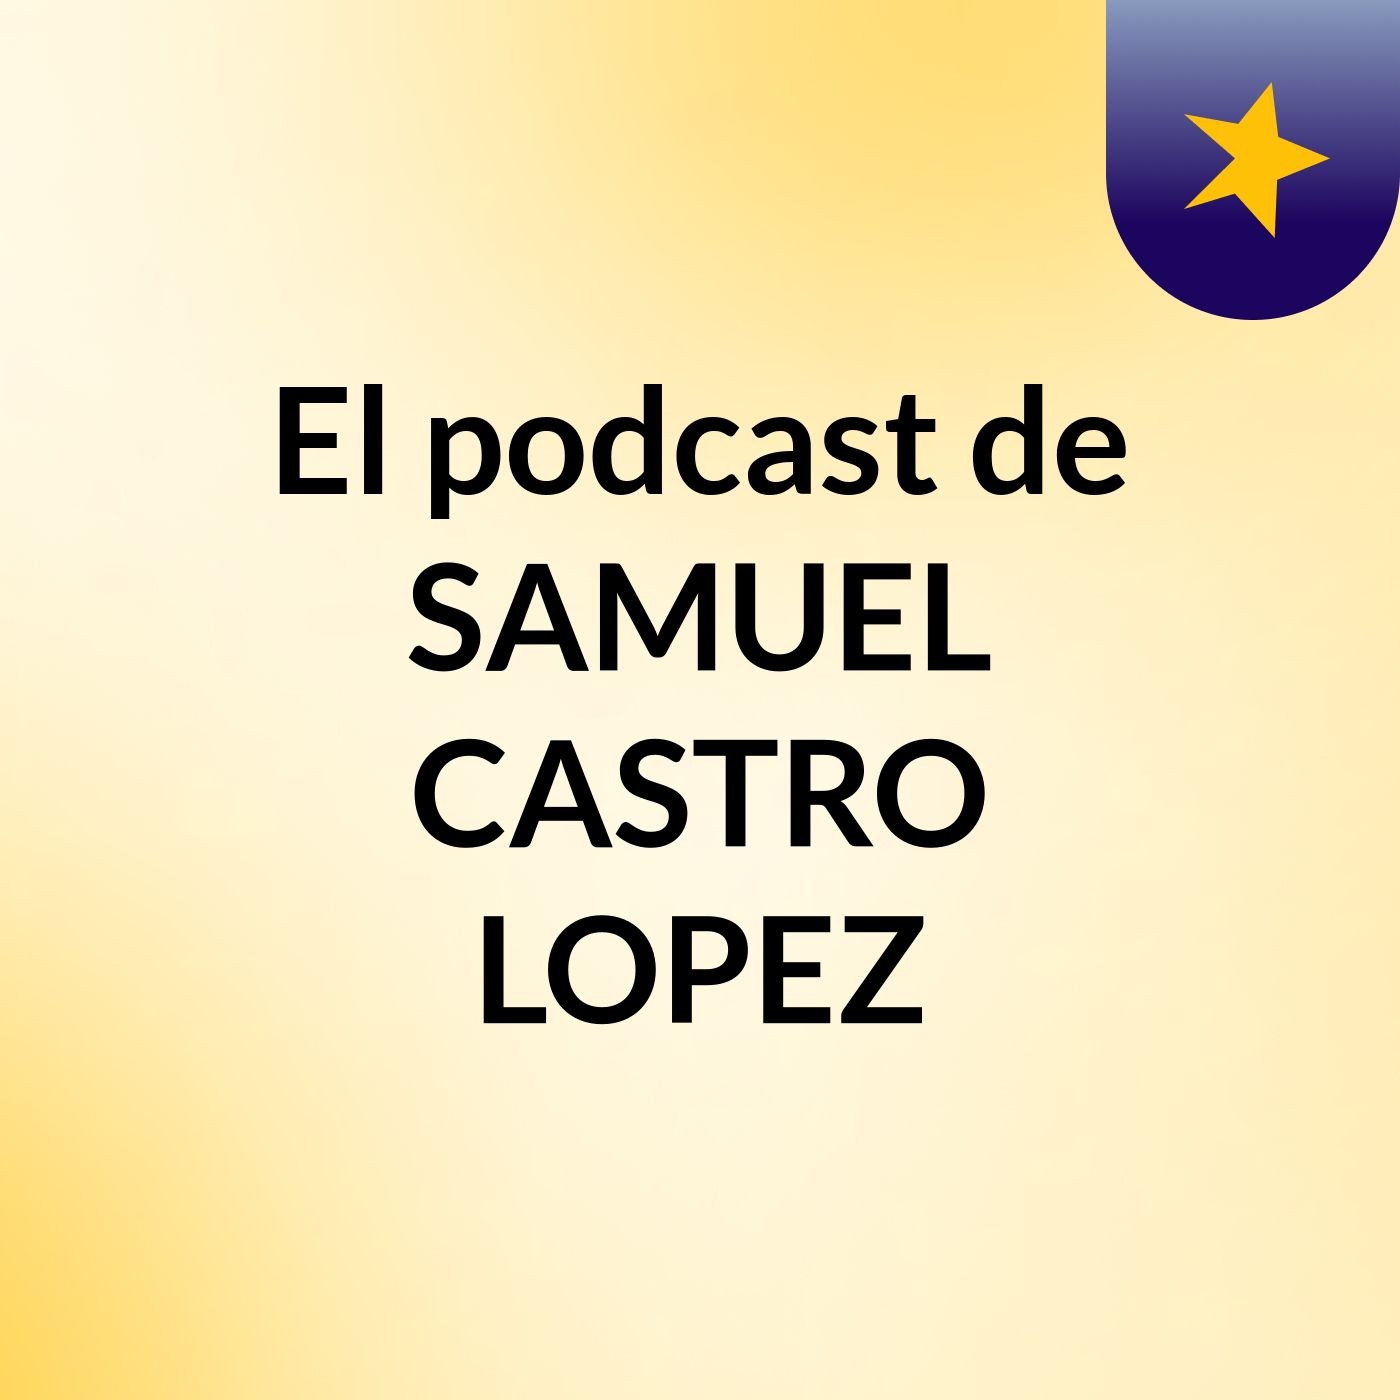 El podcast de SAMUEL CASTRO LOPEZ